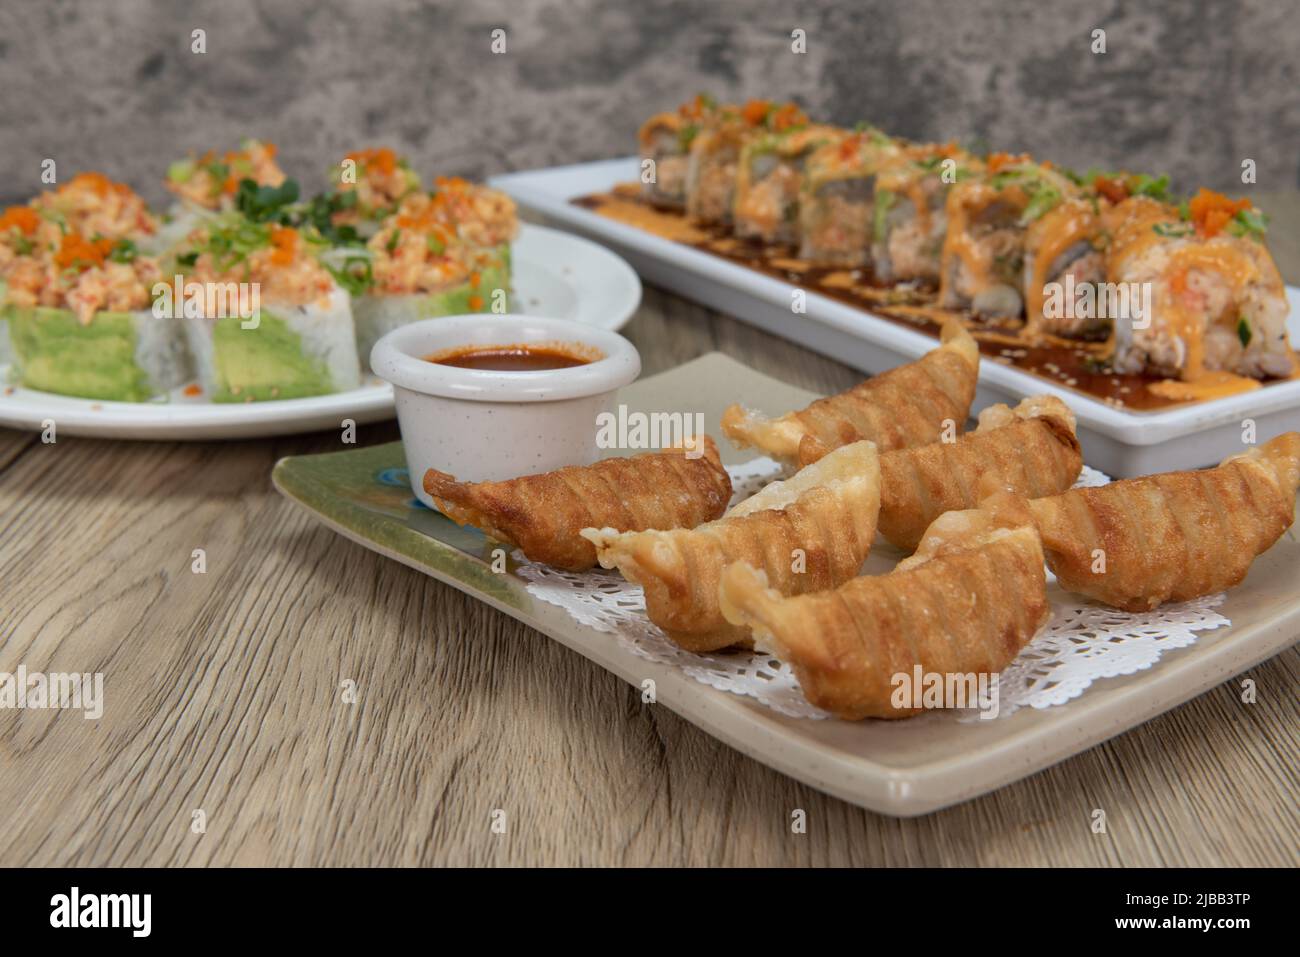 La cucina asiatica si festeggia al tavolo con una scelta di sushi roll o gyoza fritta da mangiare. Foto Stock